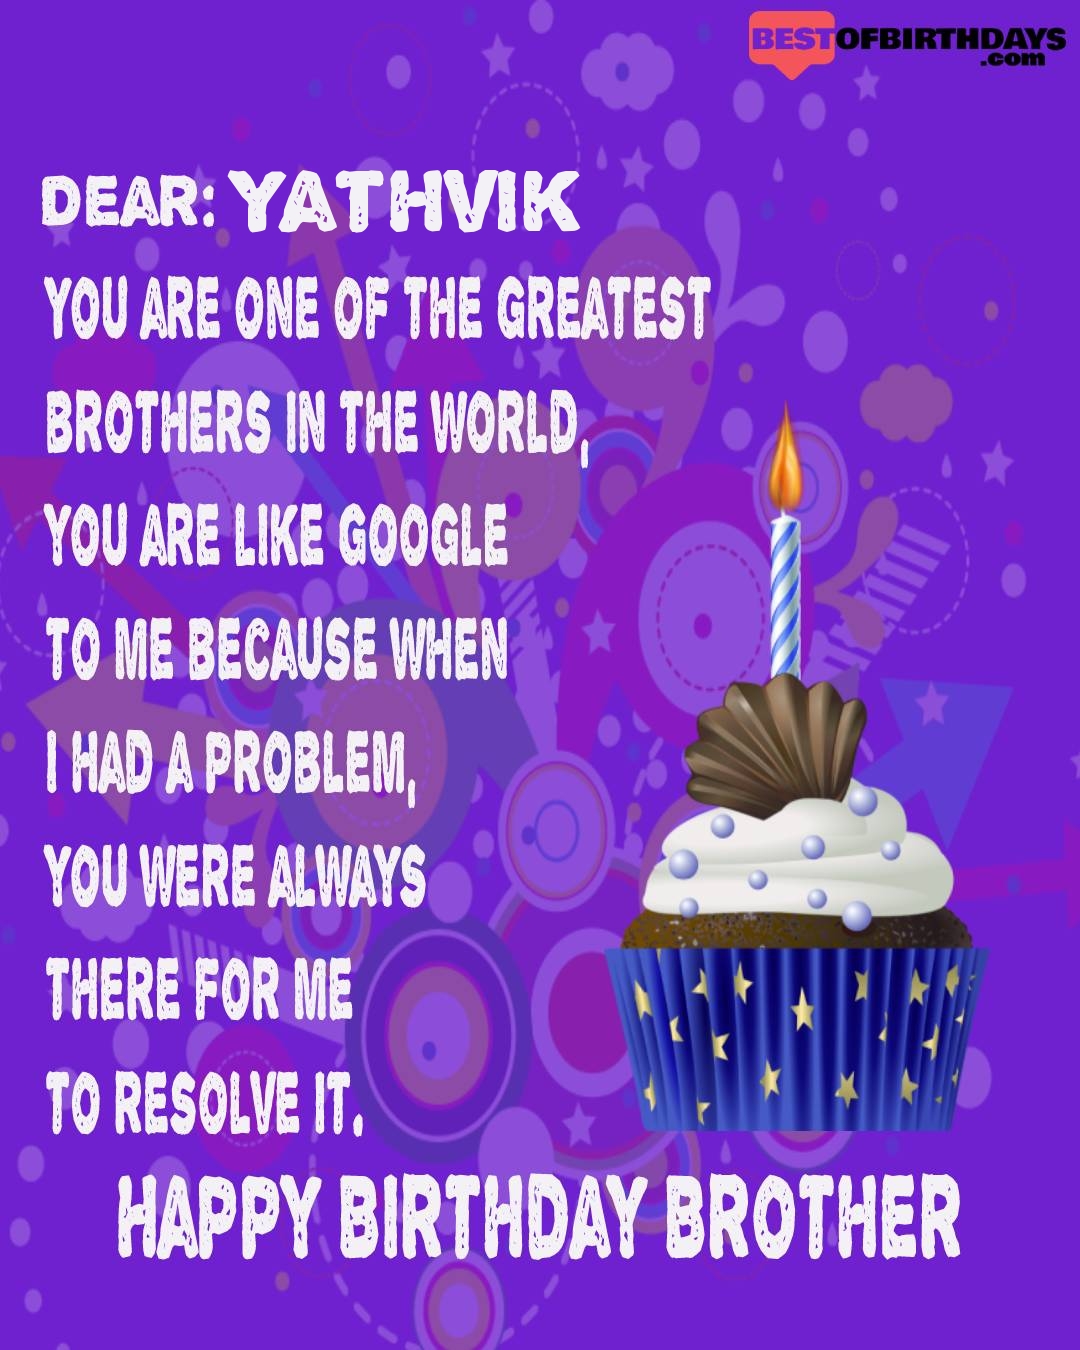 Happy birthday yathvik bhai brother bro